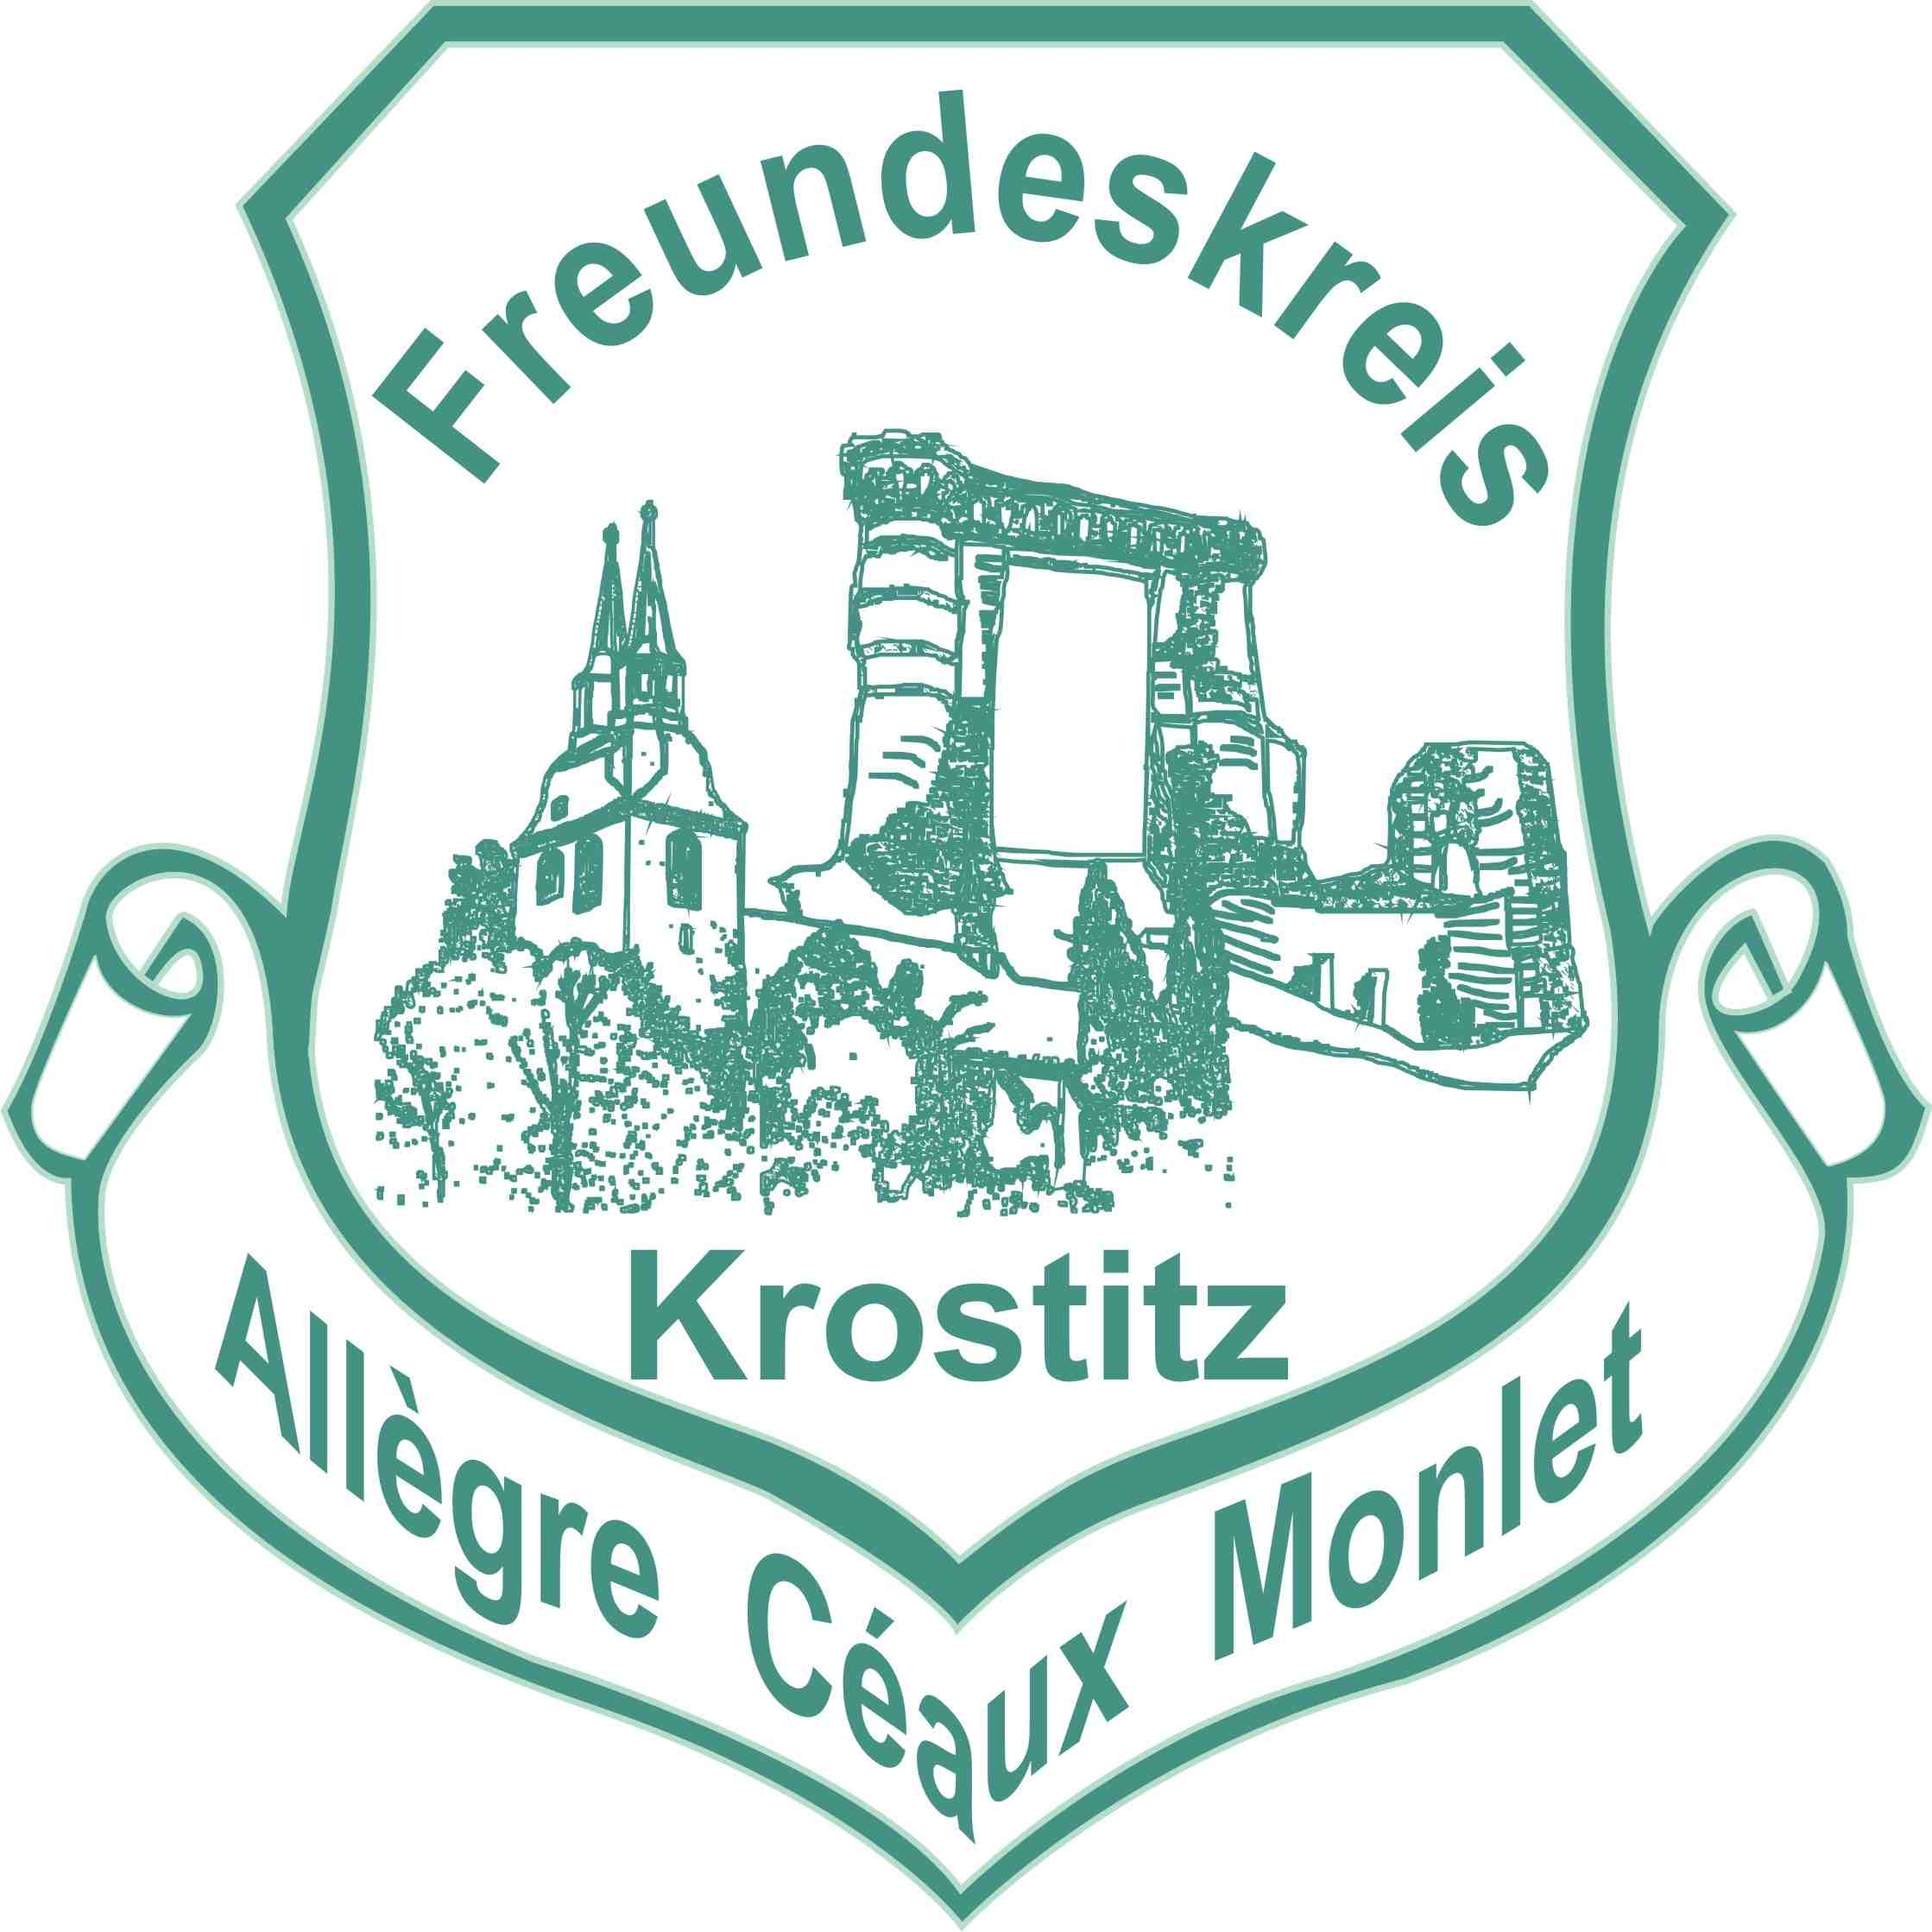 Freundeskreis Krostitz-Allègre/Monlet e.V.